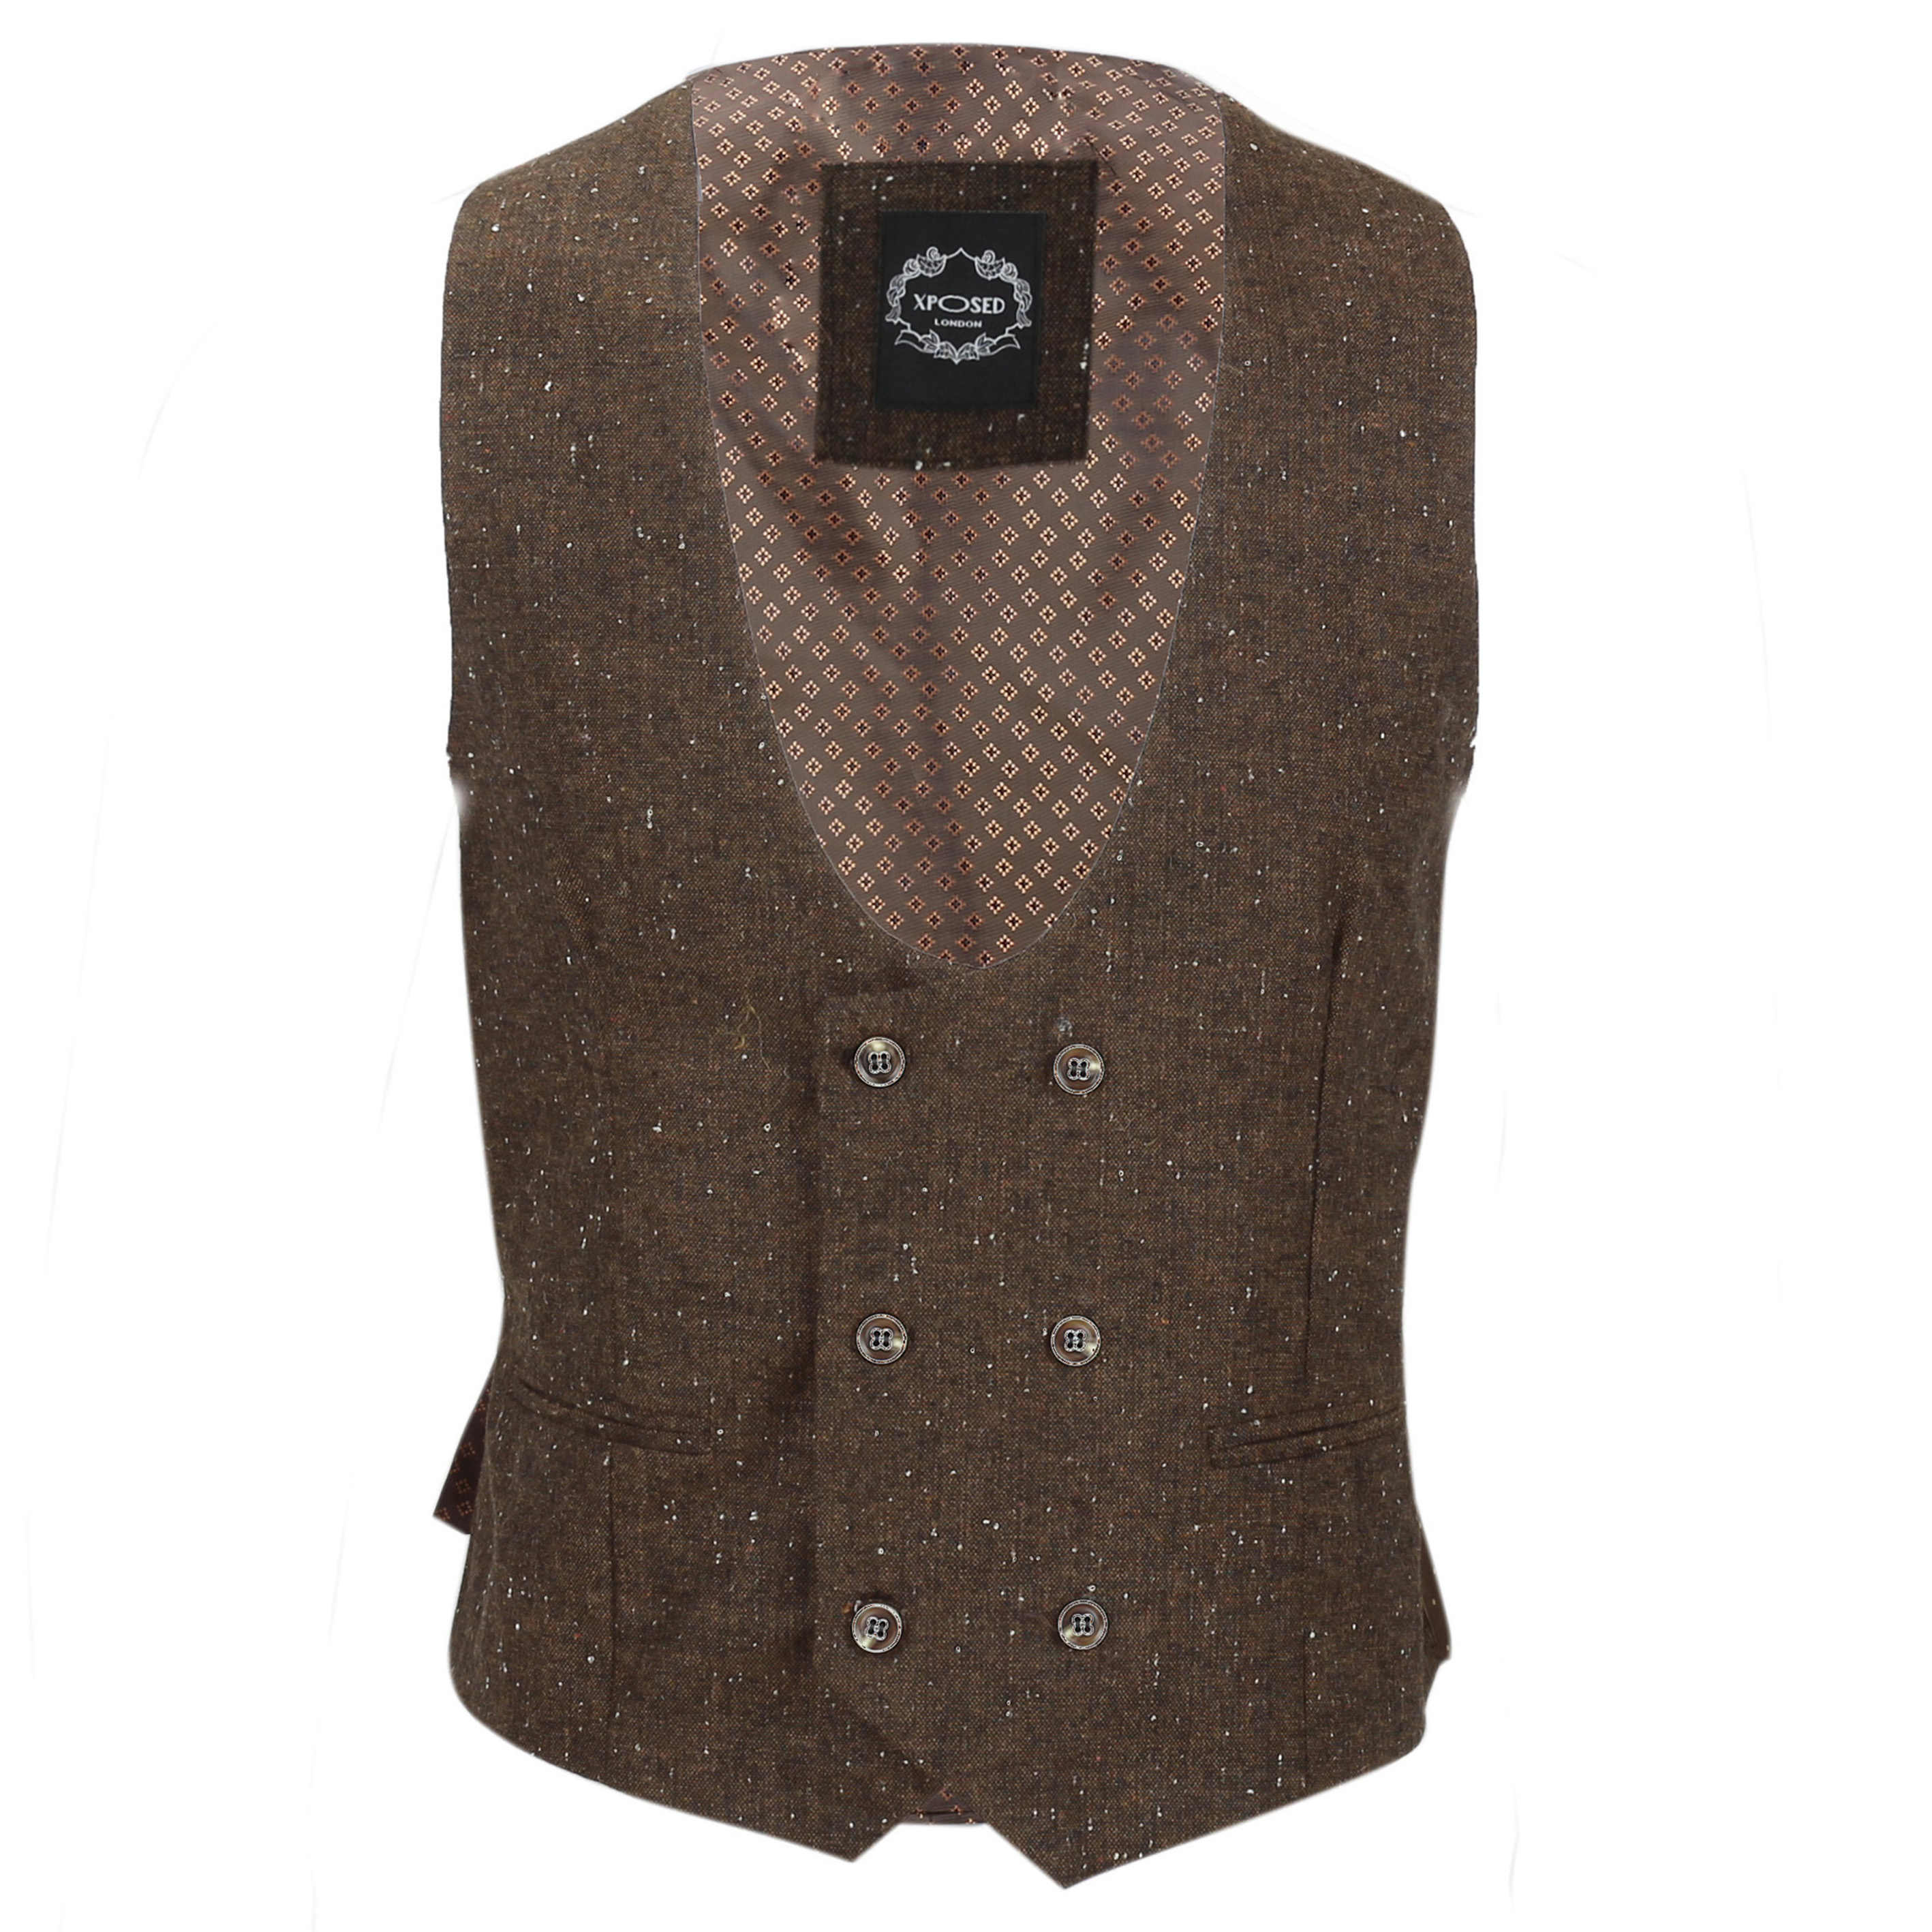 New MensDouble Breasted Tweed Wool Waistcoat Vintage Smart Casual Slim Fit Vest 